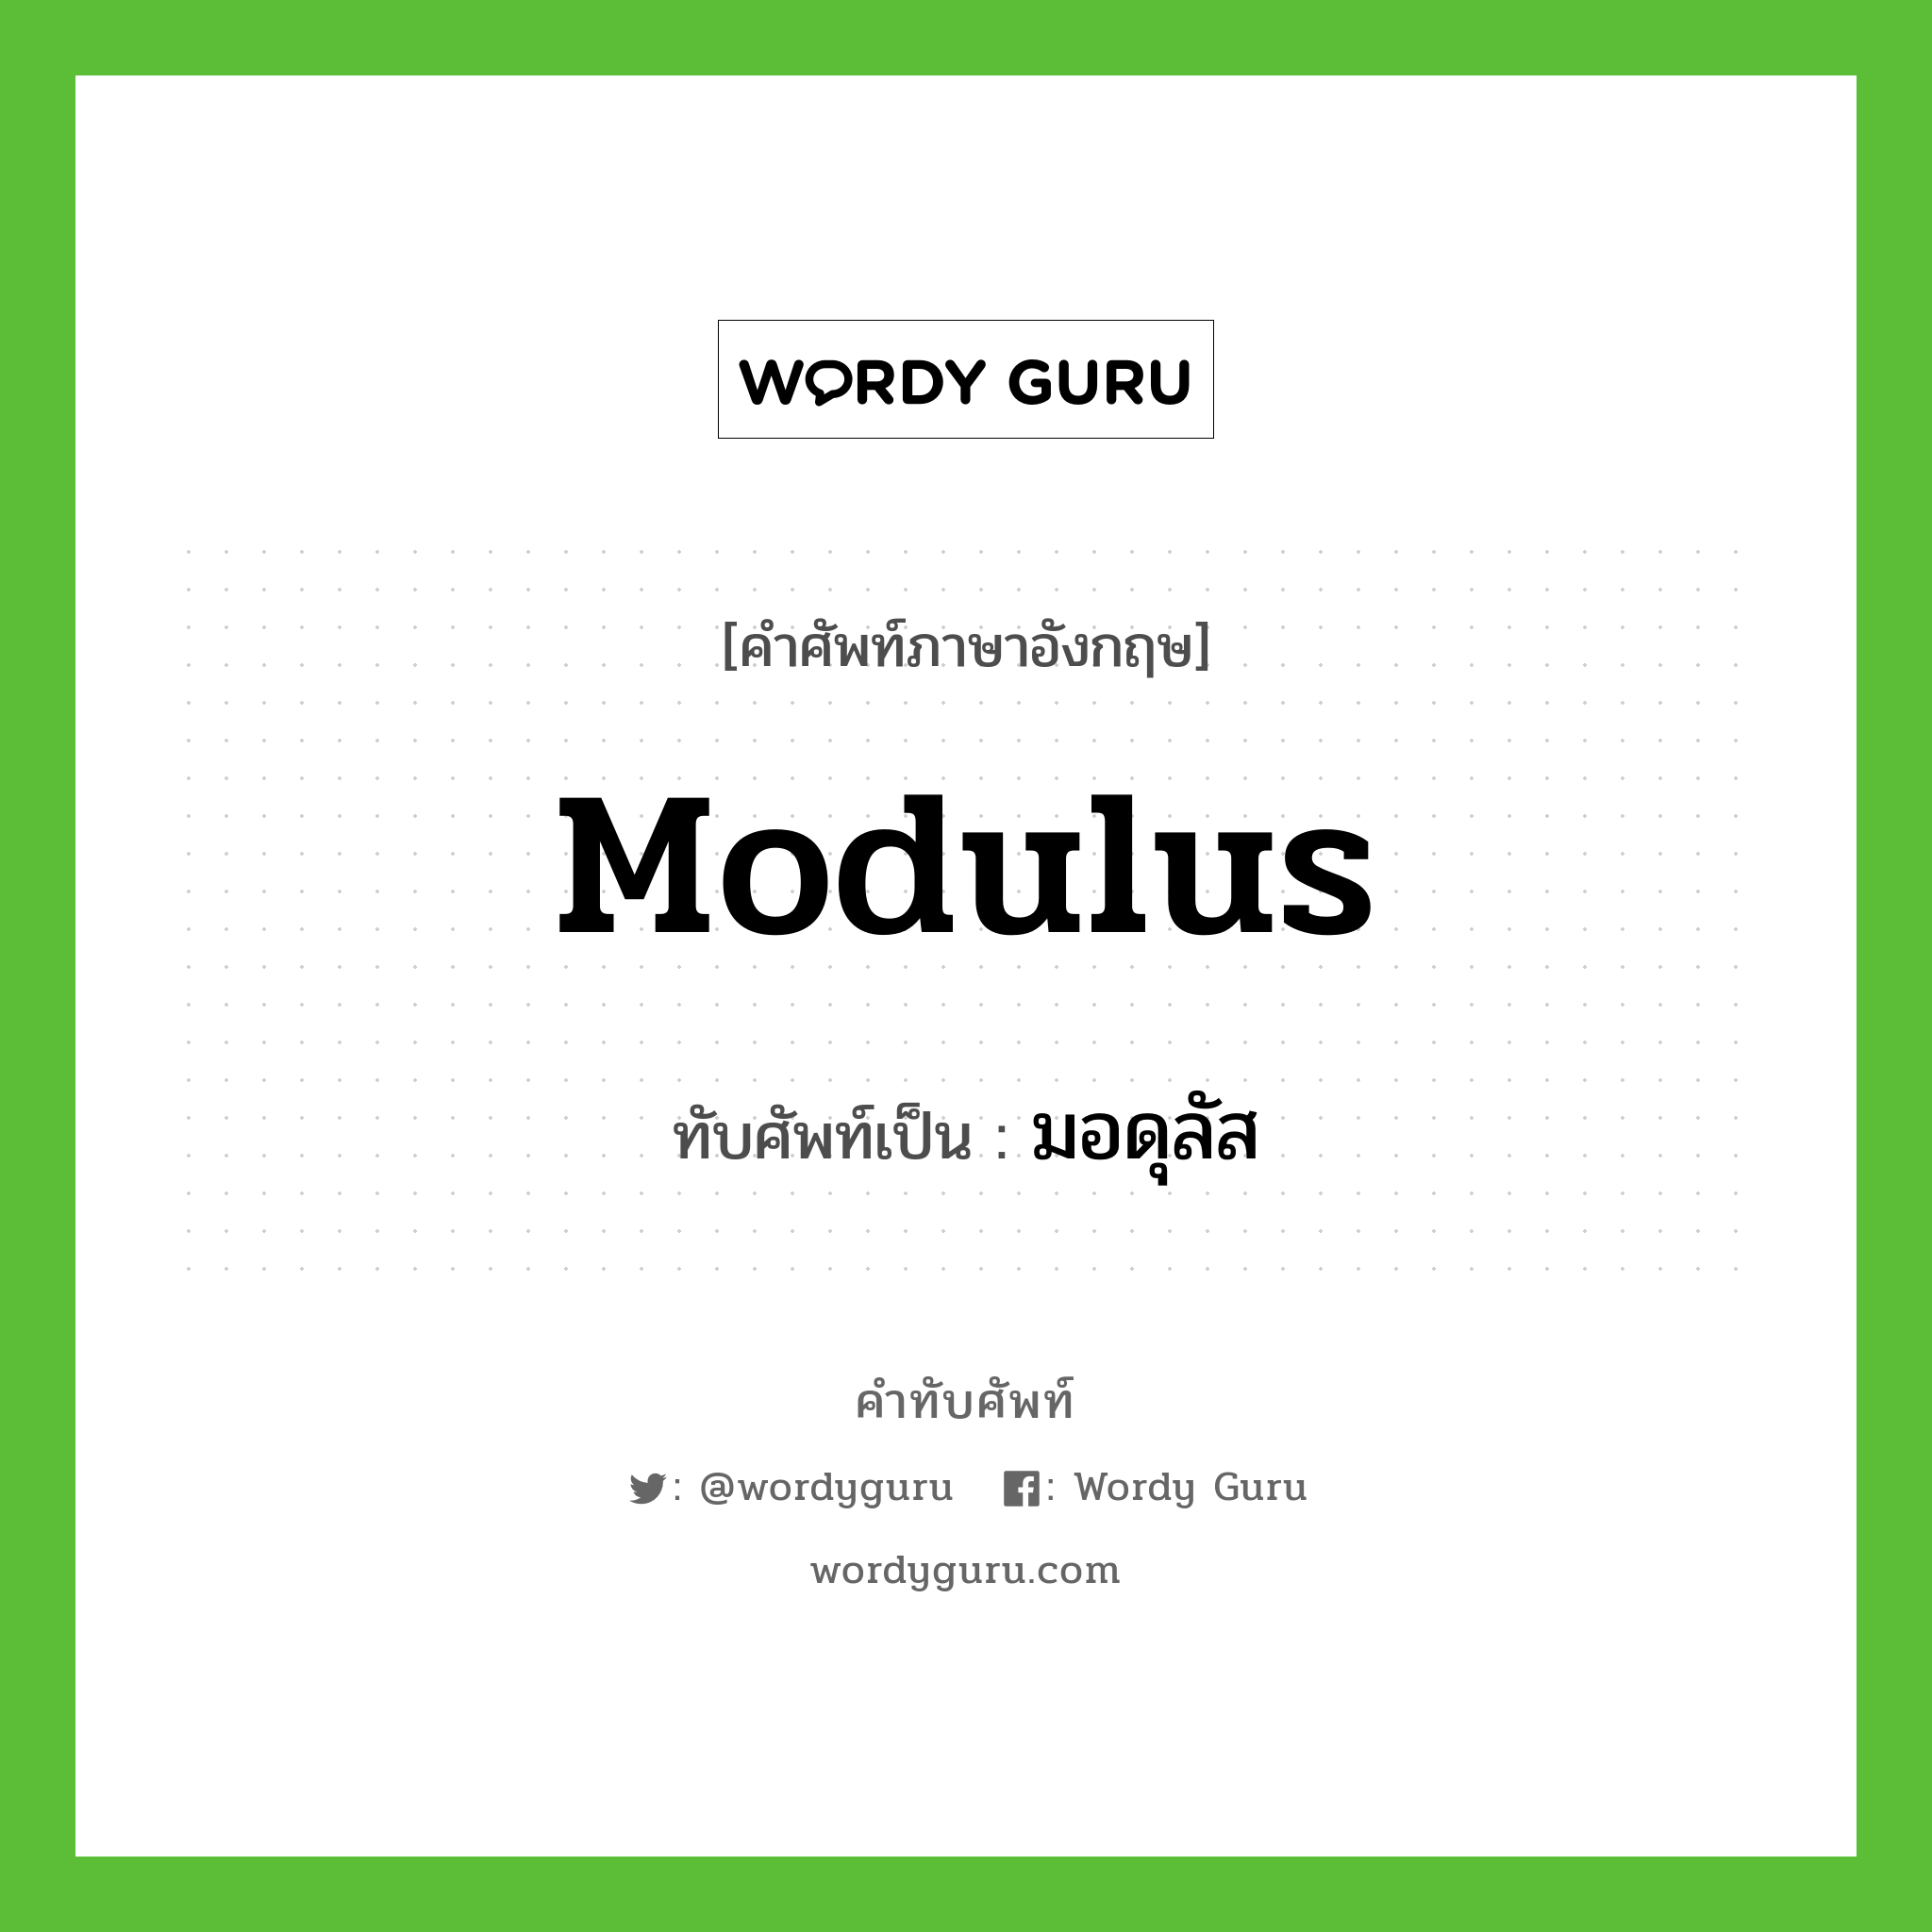 modulus เขียนเป็นคำไทยว่าอะไร?, คำศัพท์ภาษาอังกฤษ modulus ทับศัพท์เป็น มอดุลัส